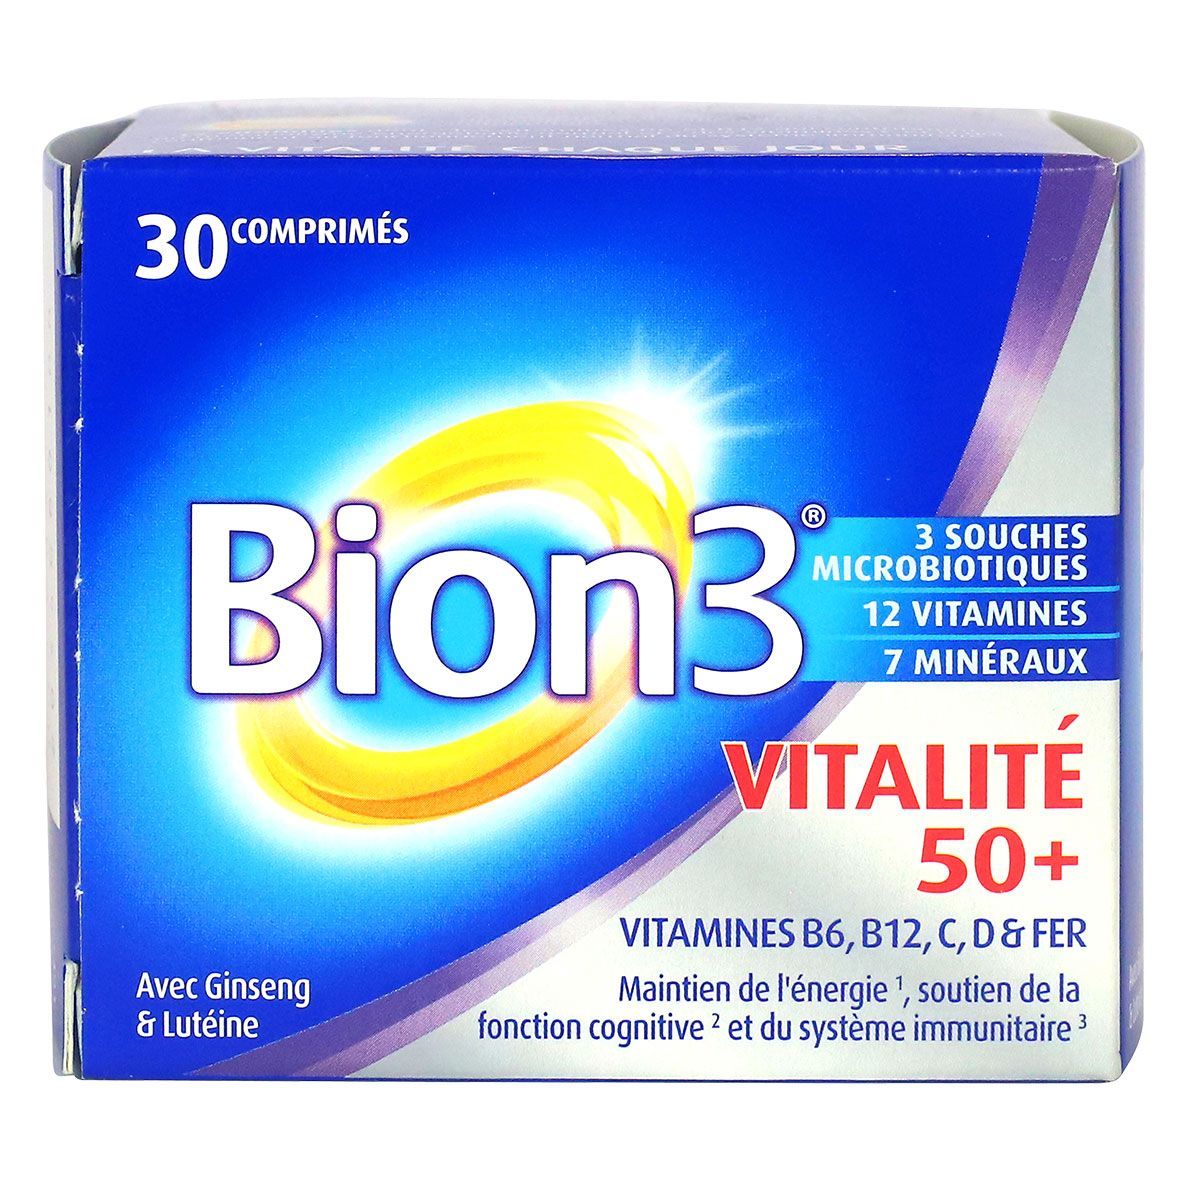 Bion 3 senior vitalité Merck est un complément alimentaire qui